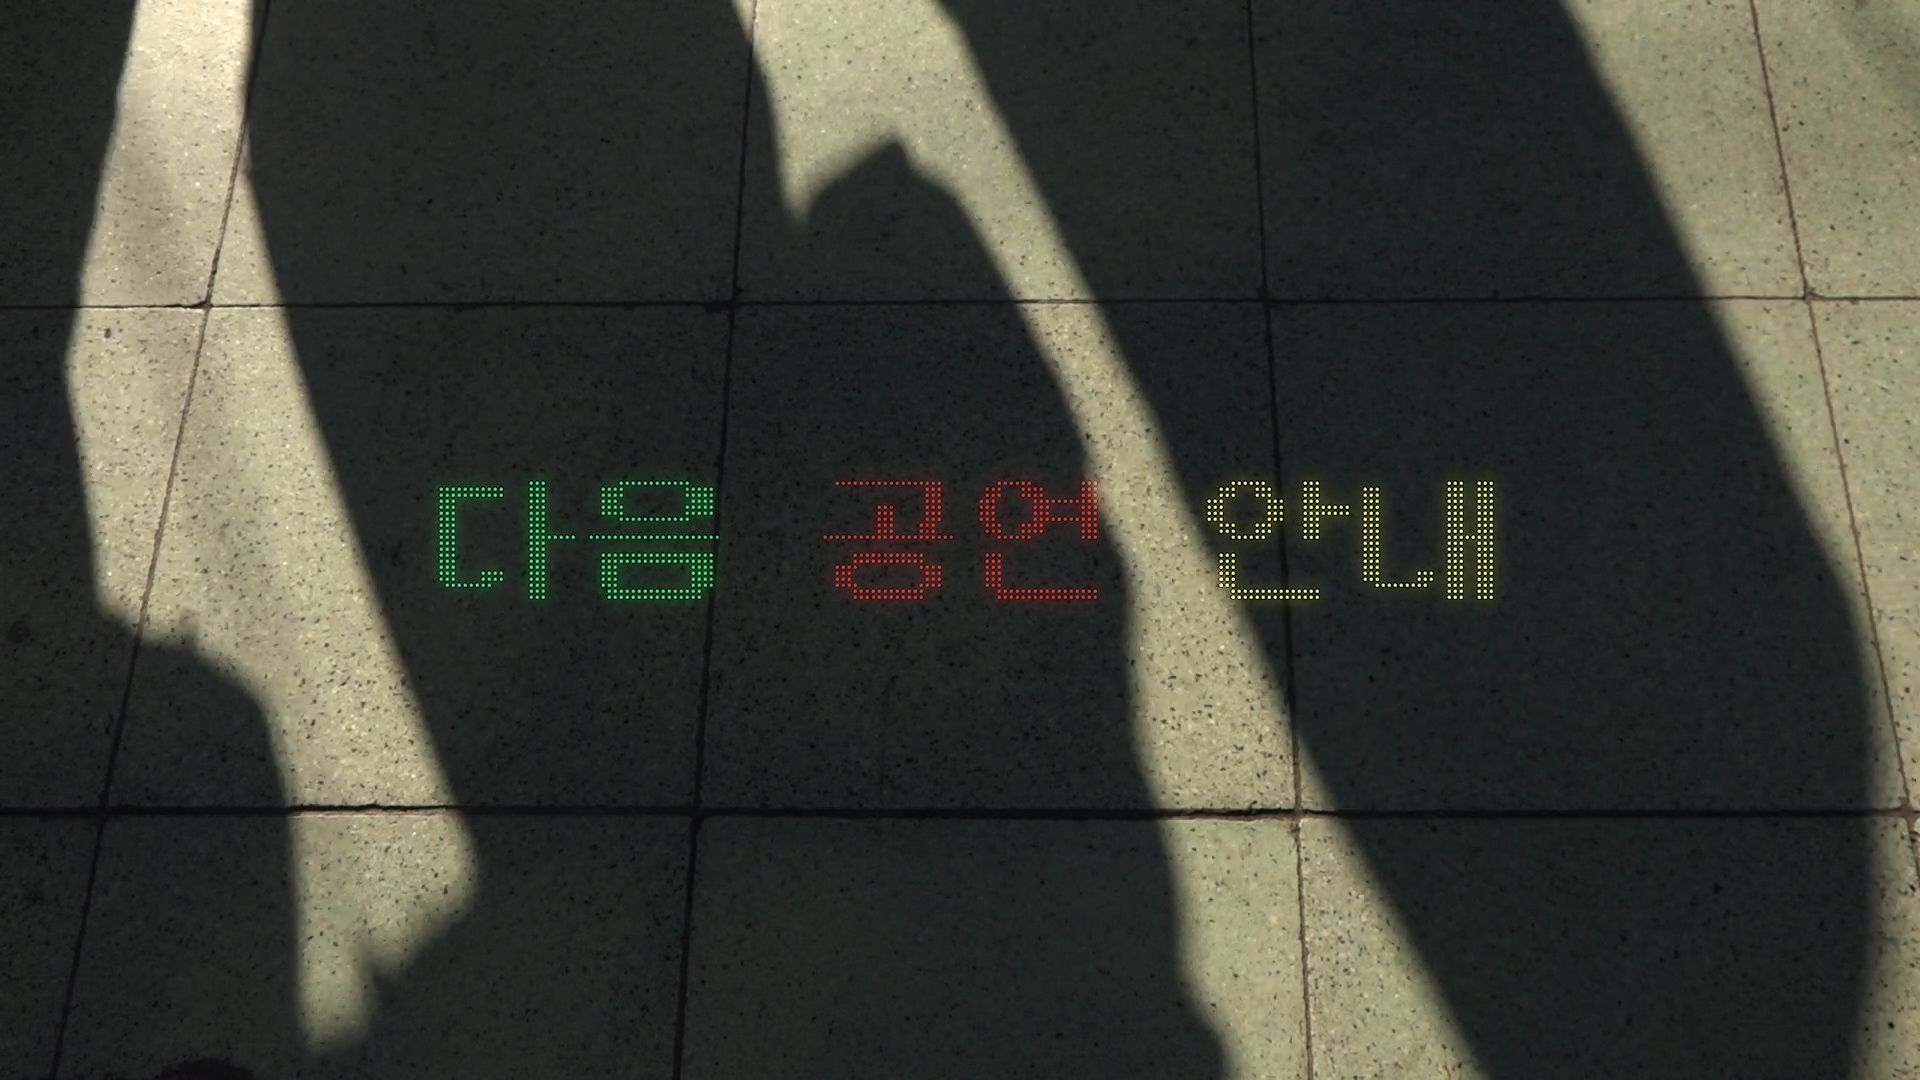 <안녕> 예고(Trailer for Take Care), 단채널 비디오, 컬러, 사운드, 8분 20초, 2019